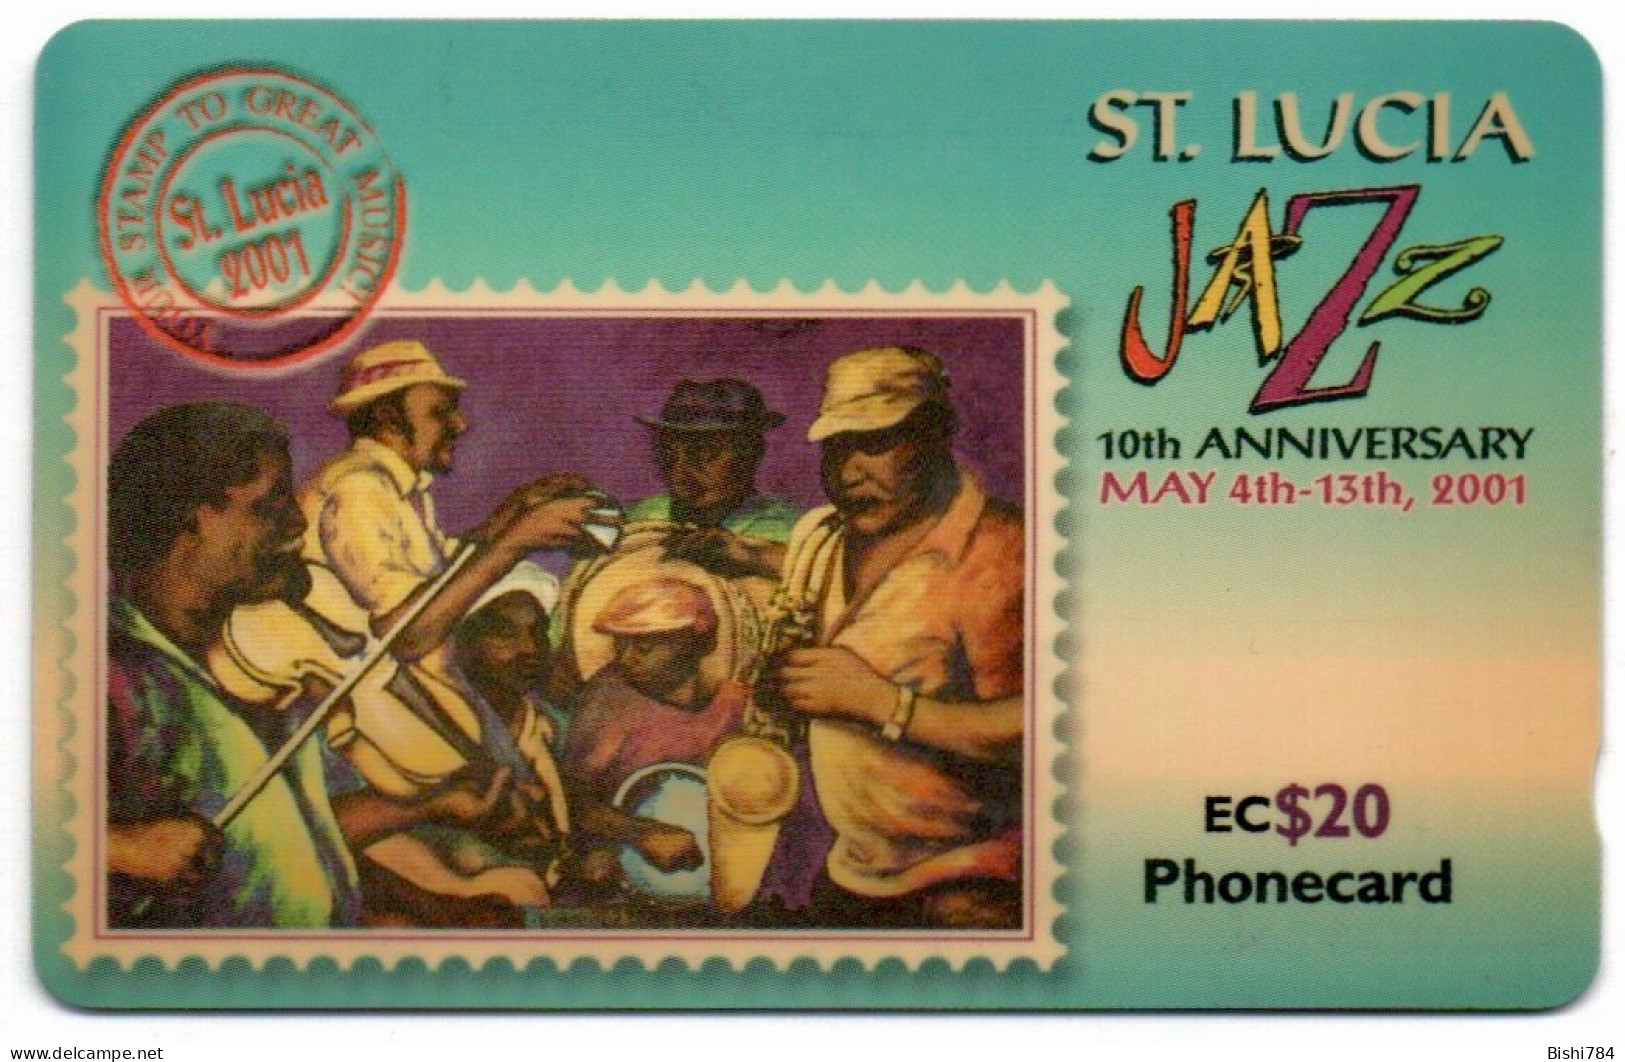 St. Lucia - Jazz Festival 2001 - 337CSLJ - Santa Lucia